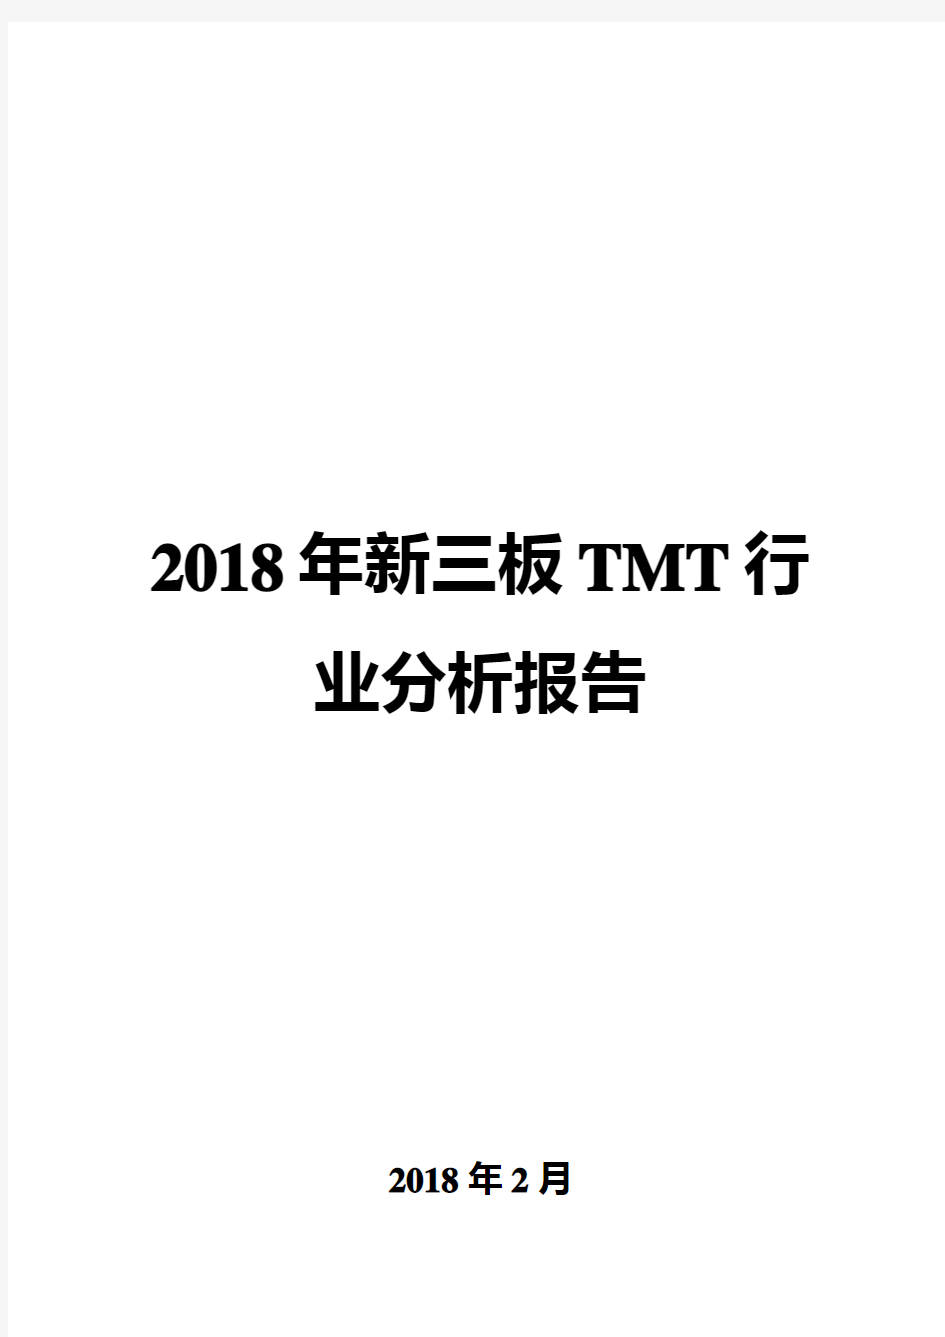 2018年新三板TMT行业分析报告